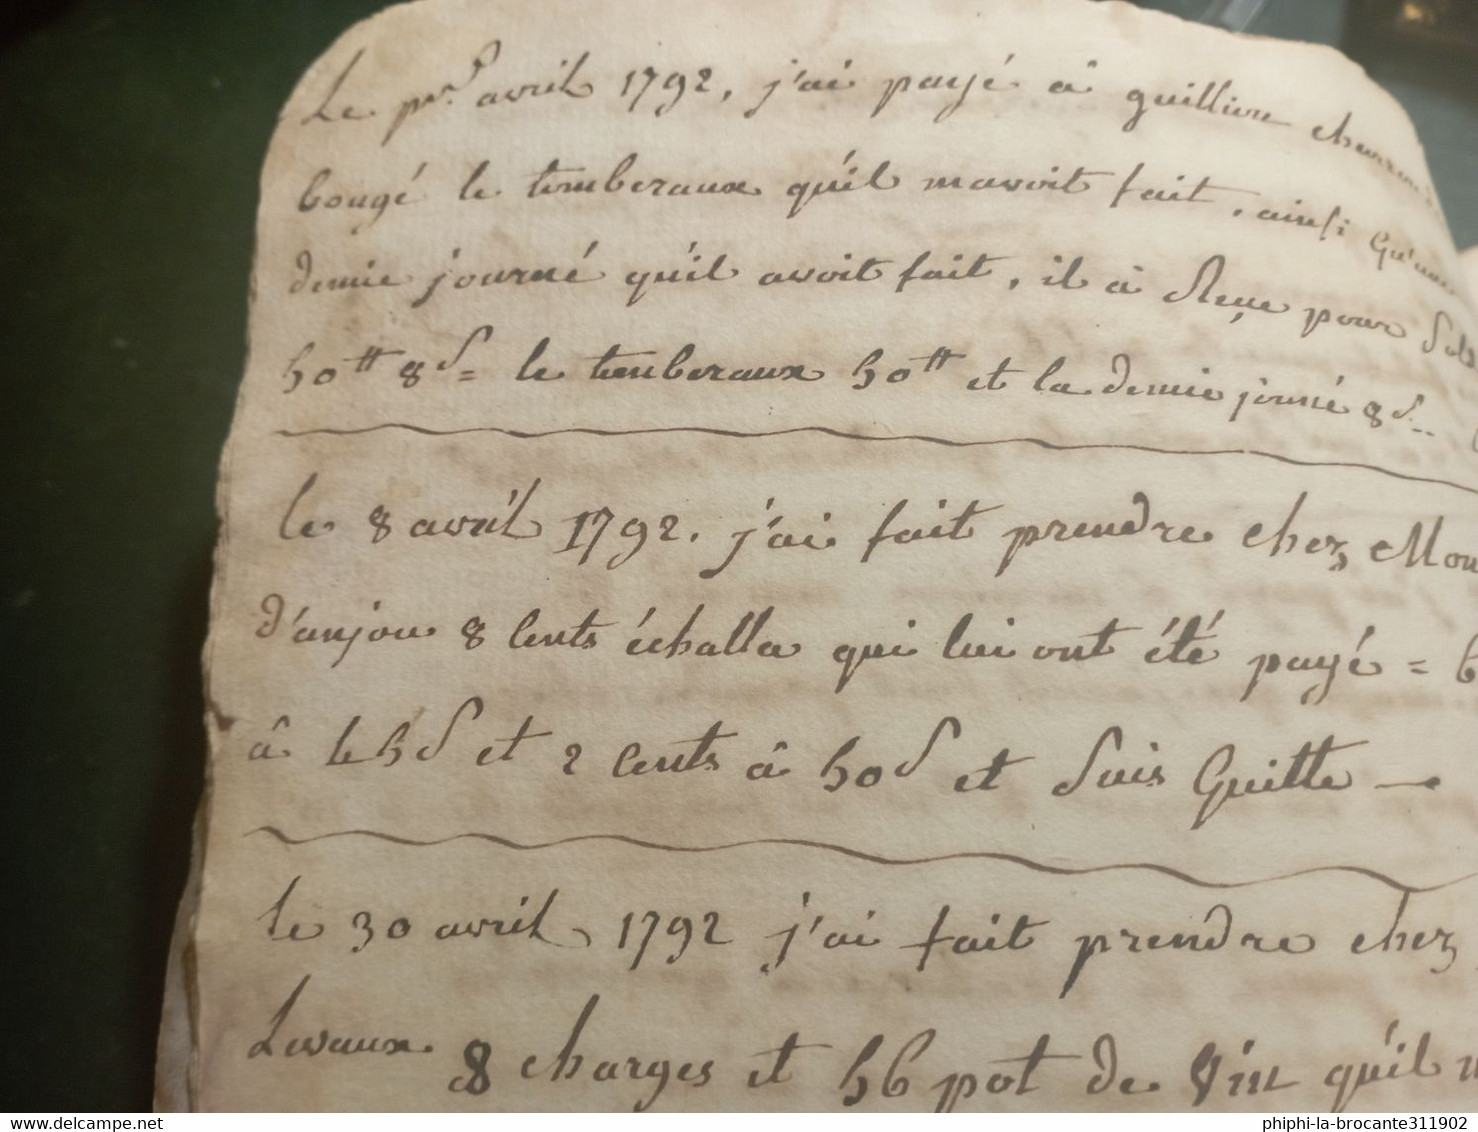 Cahier de compte d'une personne habitant entre Beaurepaire et Vienne dans l'Isère ouvert en 1792 et fermé en 1802